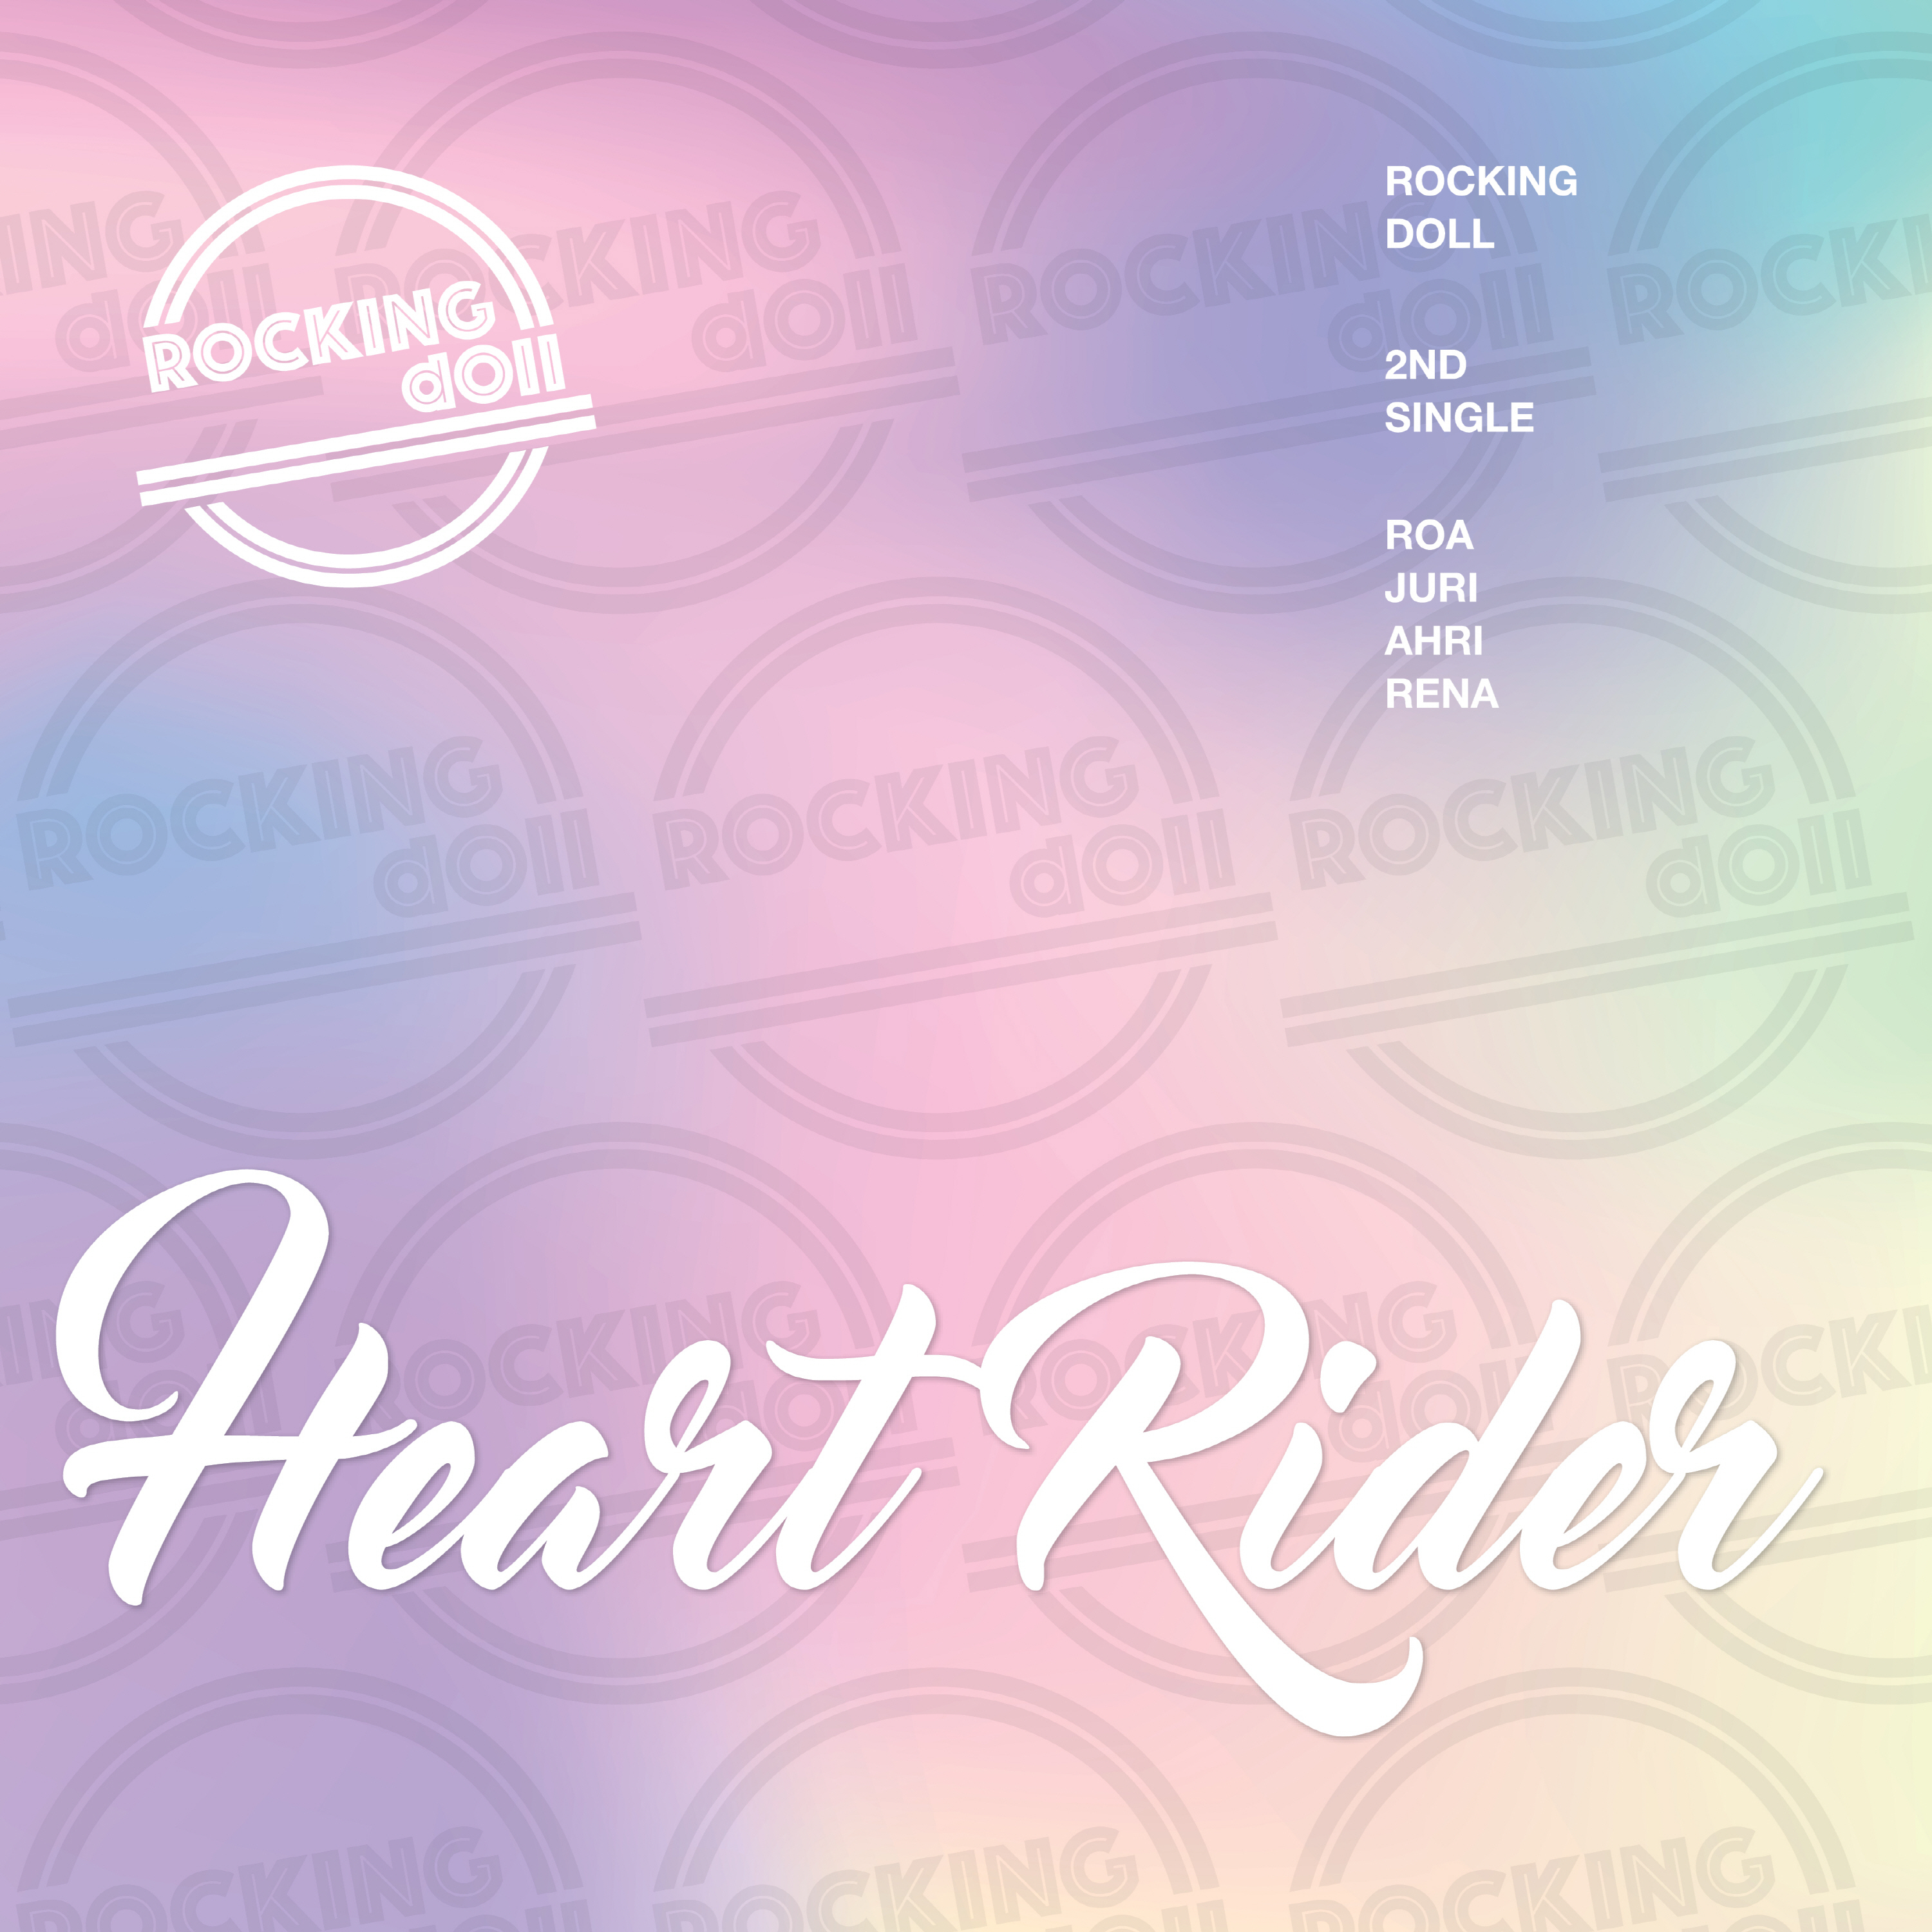 [影音] Rocking Doll - Heart Rider